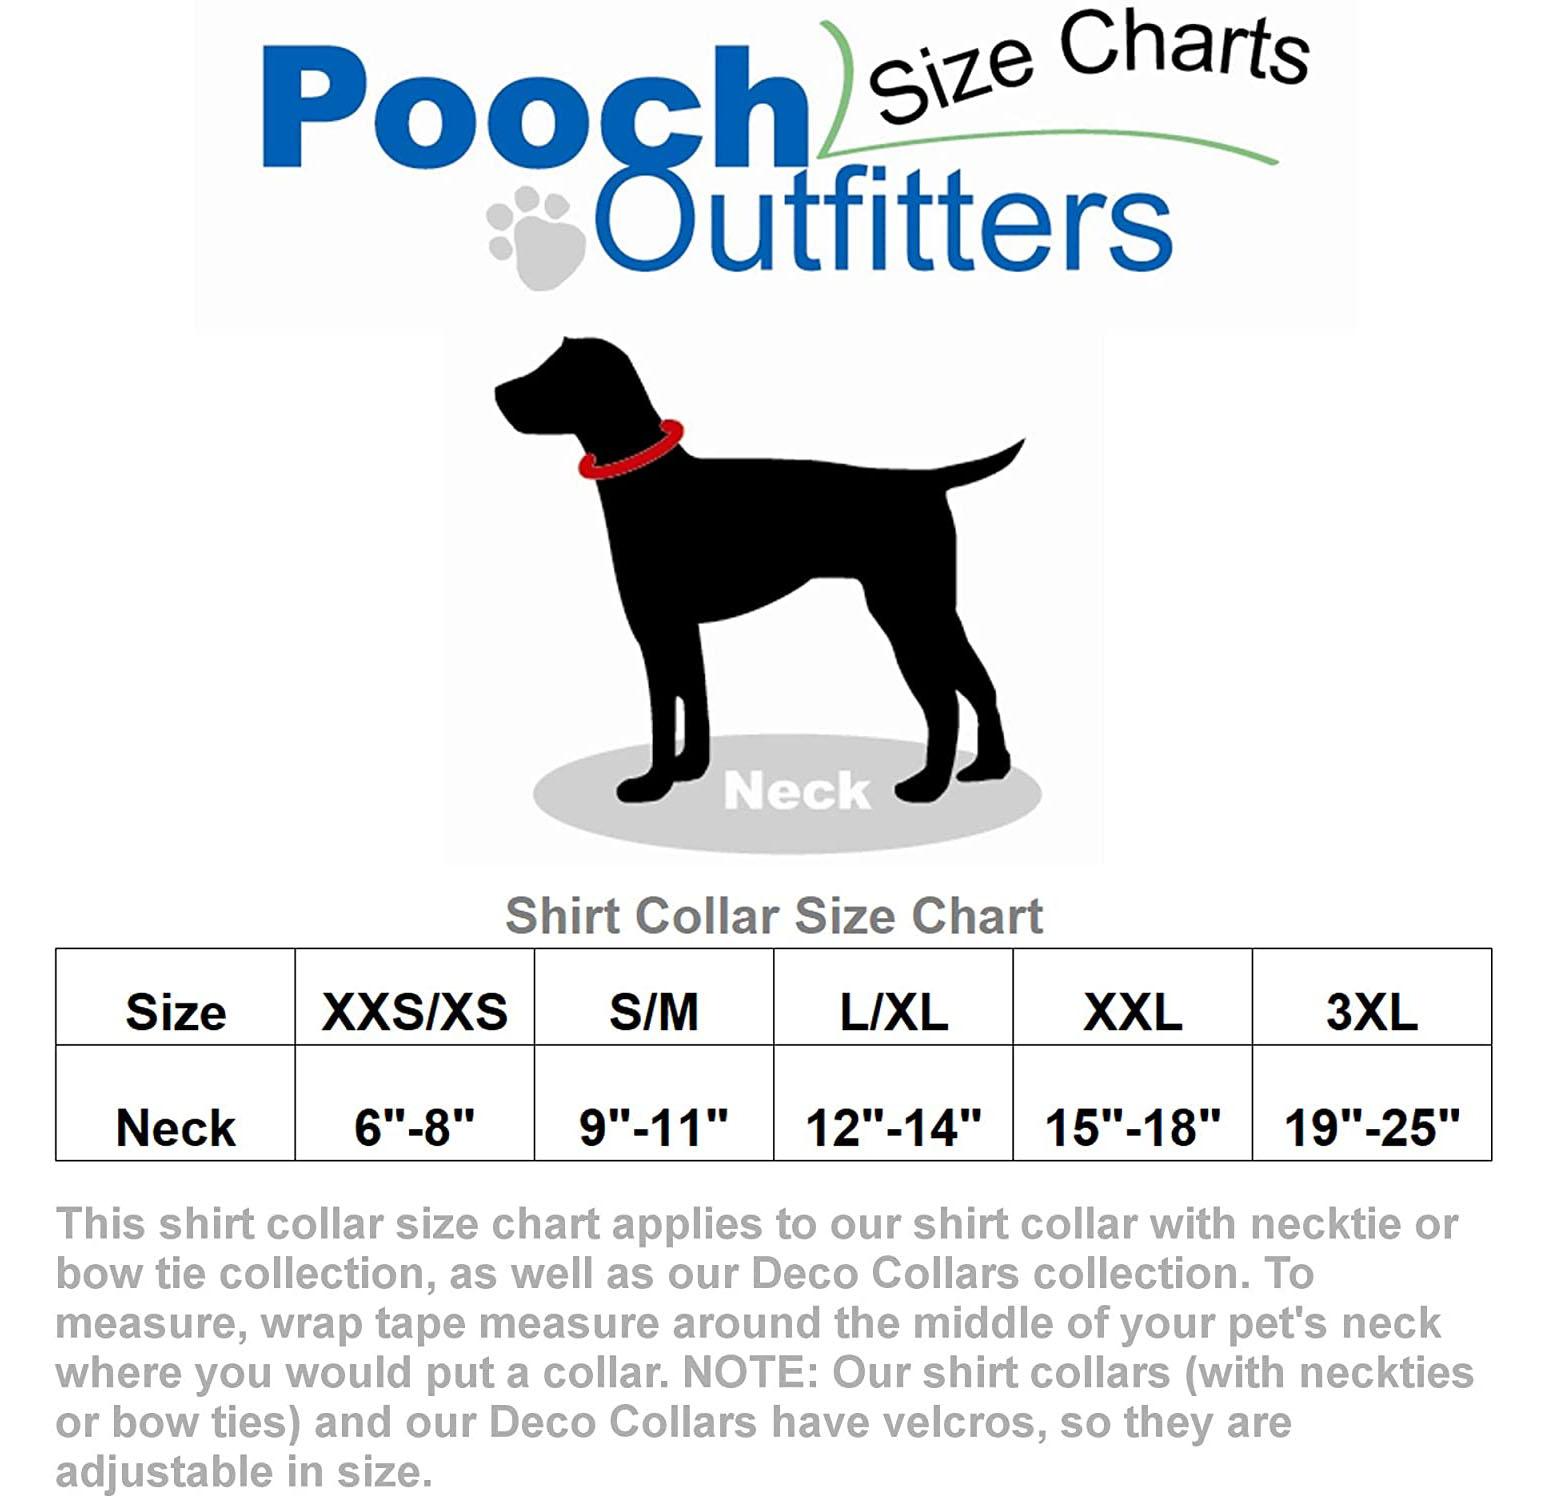 Dog Bow Ties logo shirt size Large